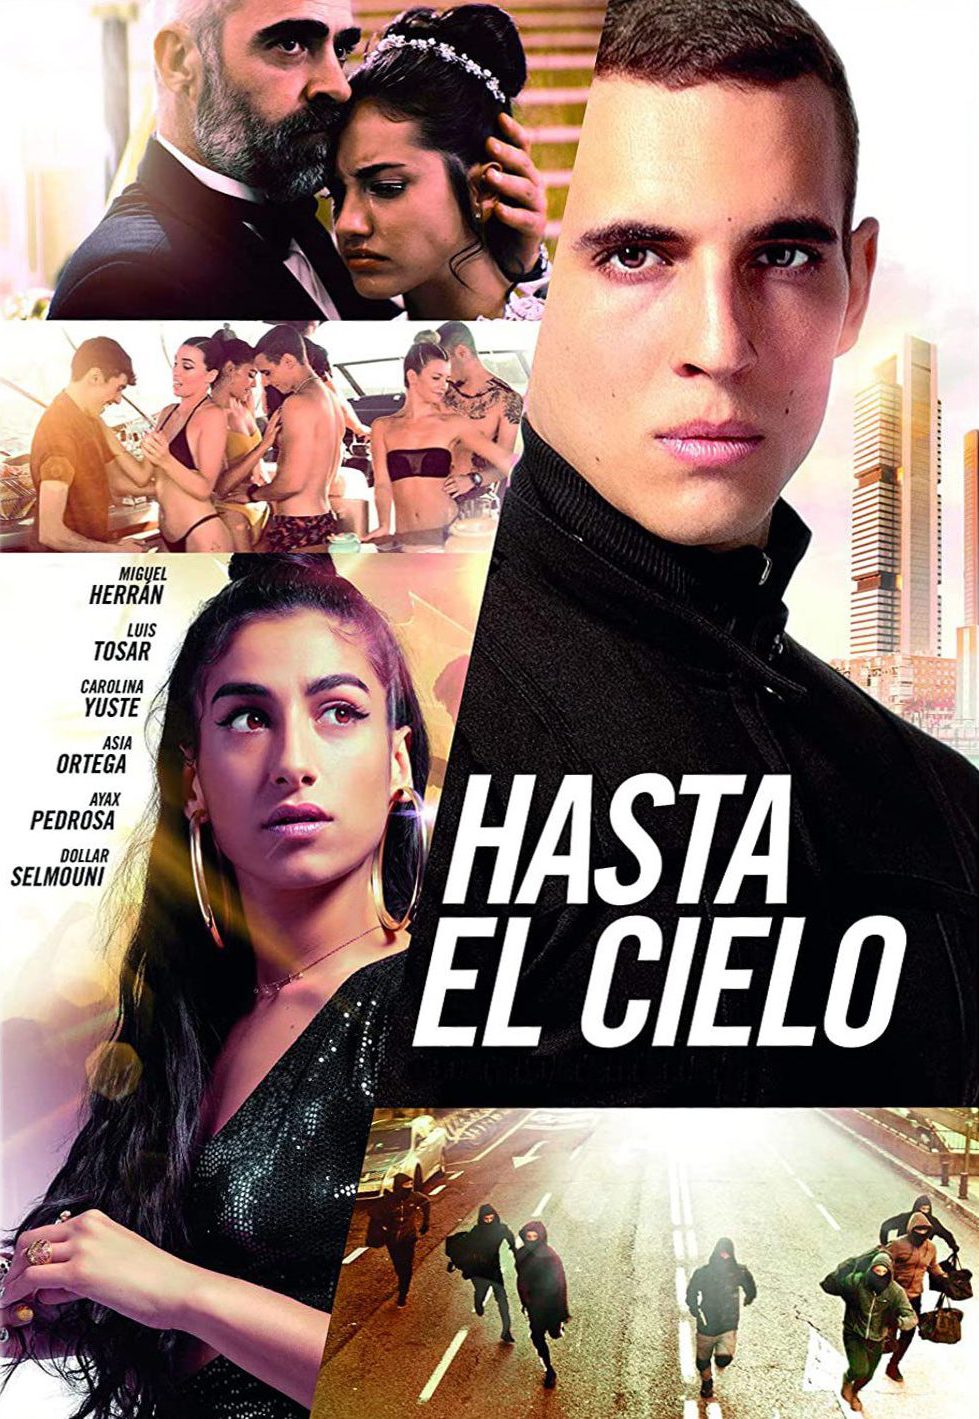 Hasta el cielo [HD] (2020)